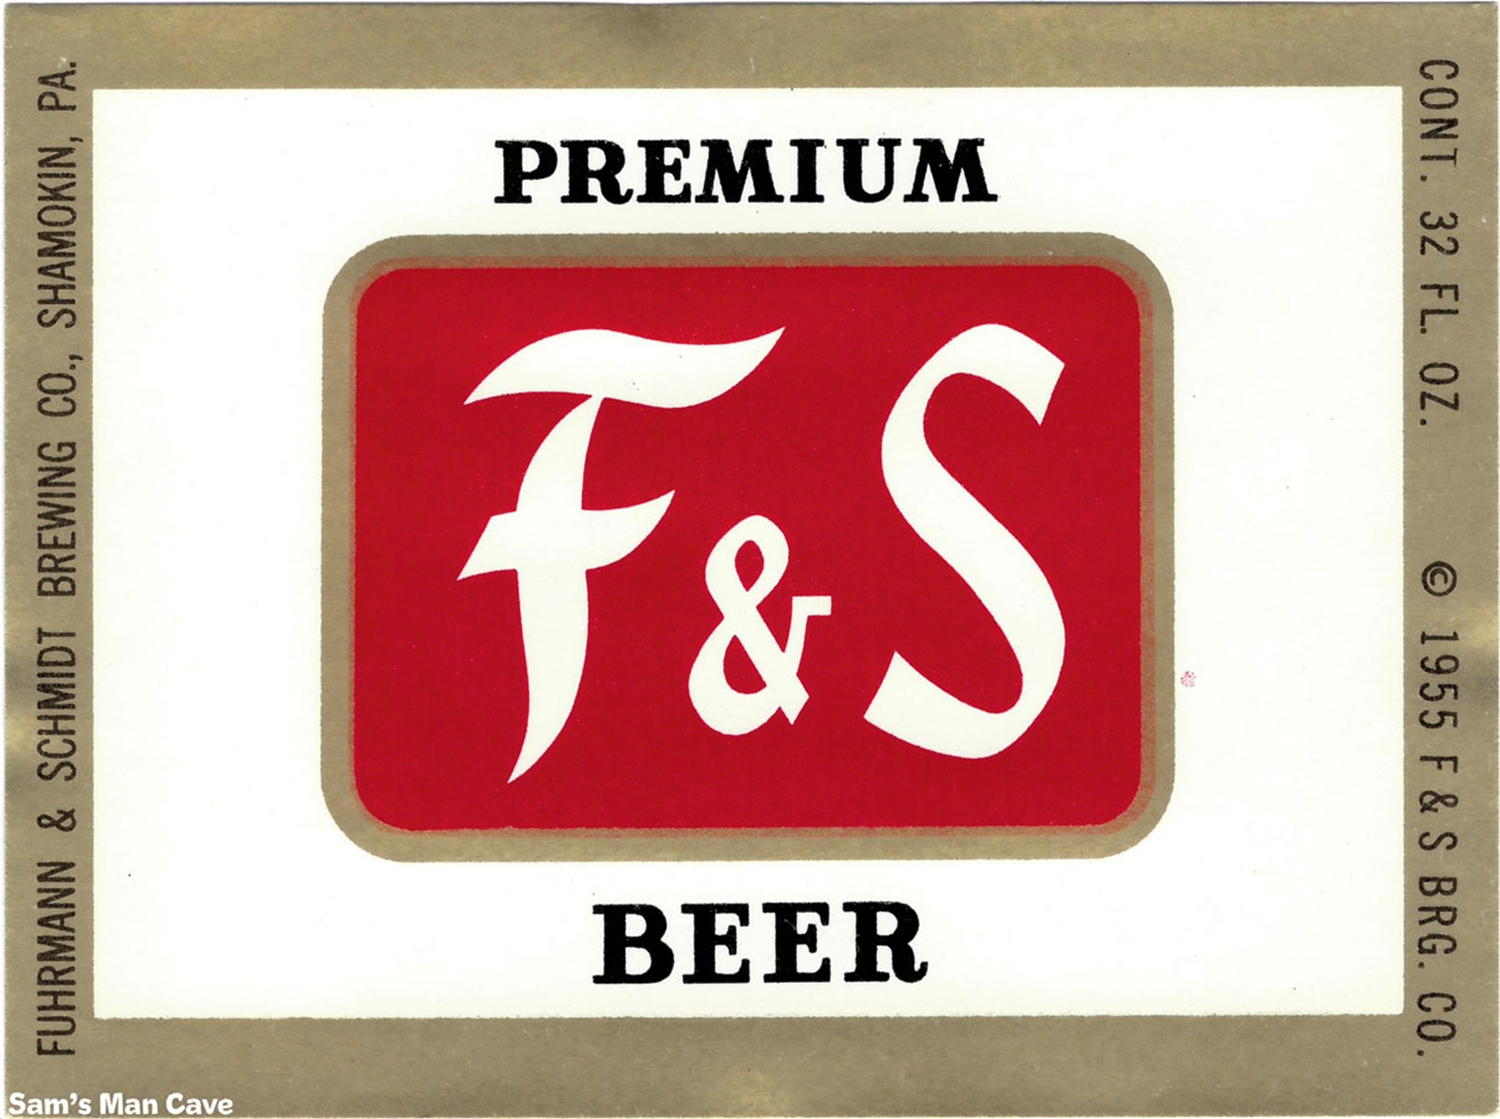 F&S Beer Label